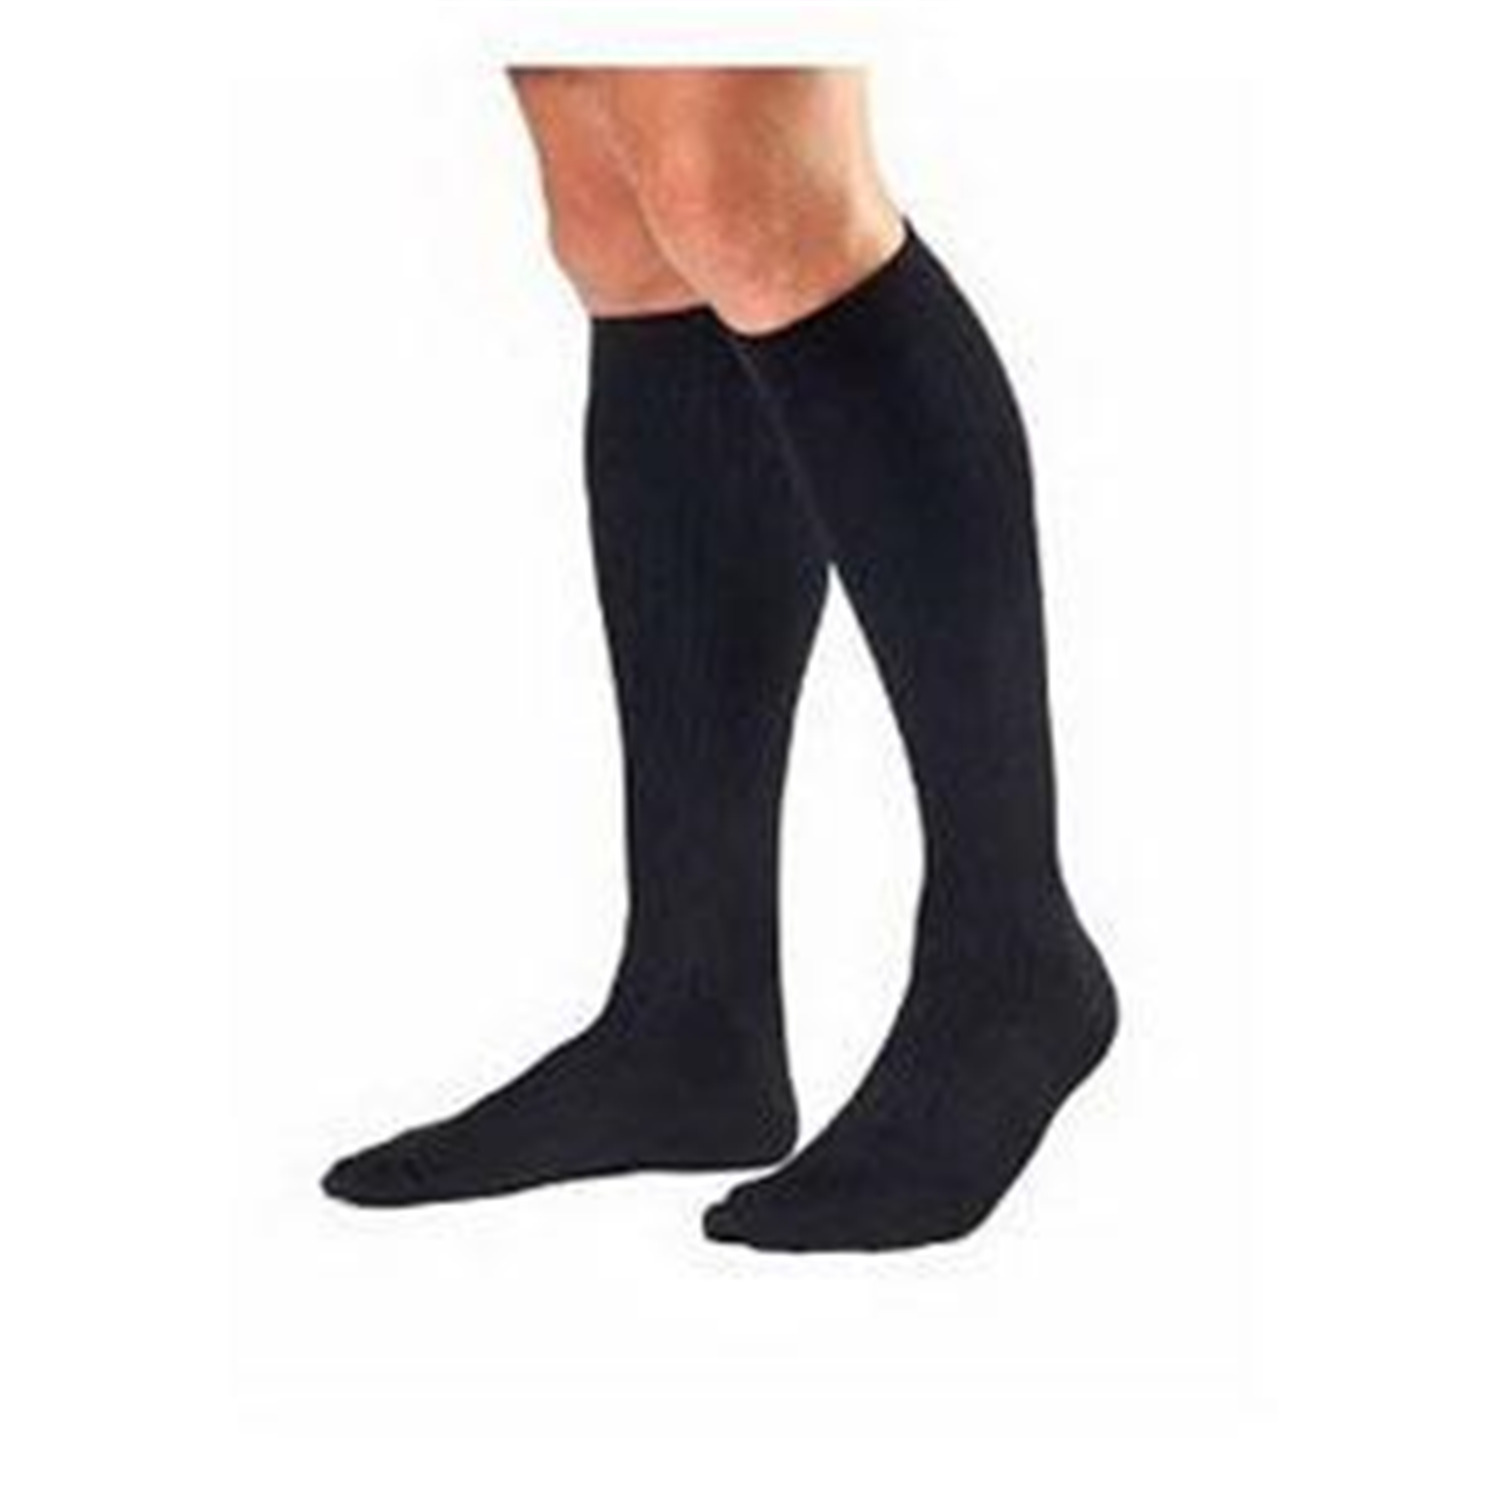 BSN Medical Men's KneeHigh Socks Medium 3040 mmHg